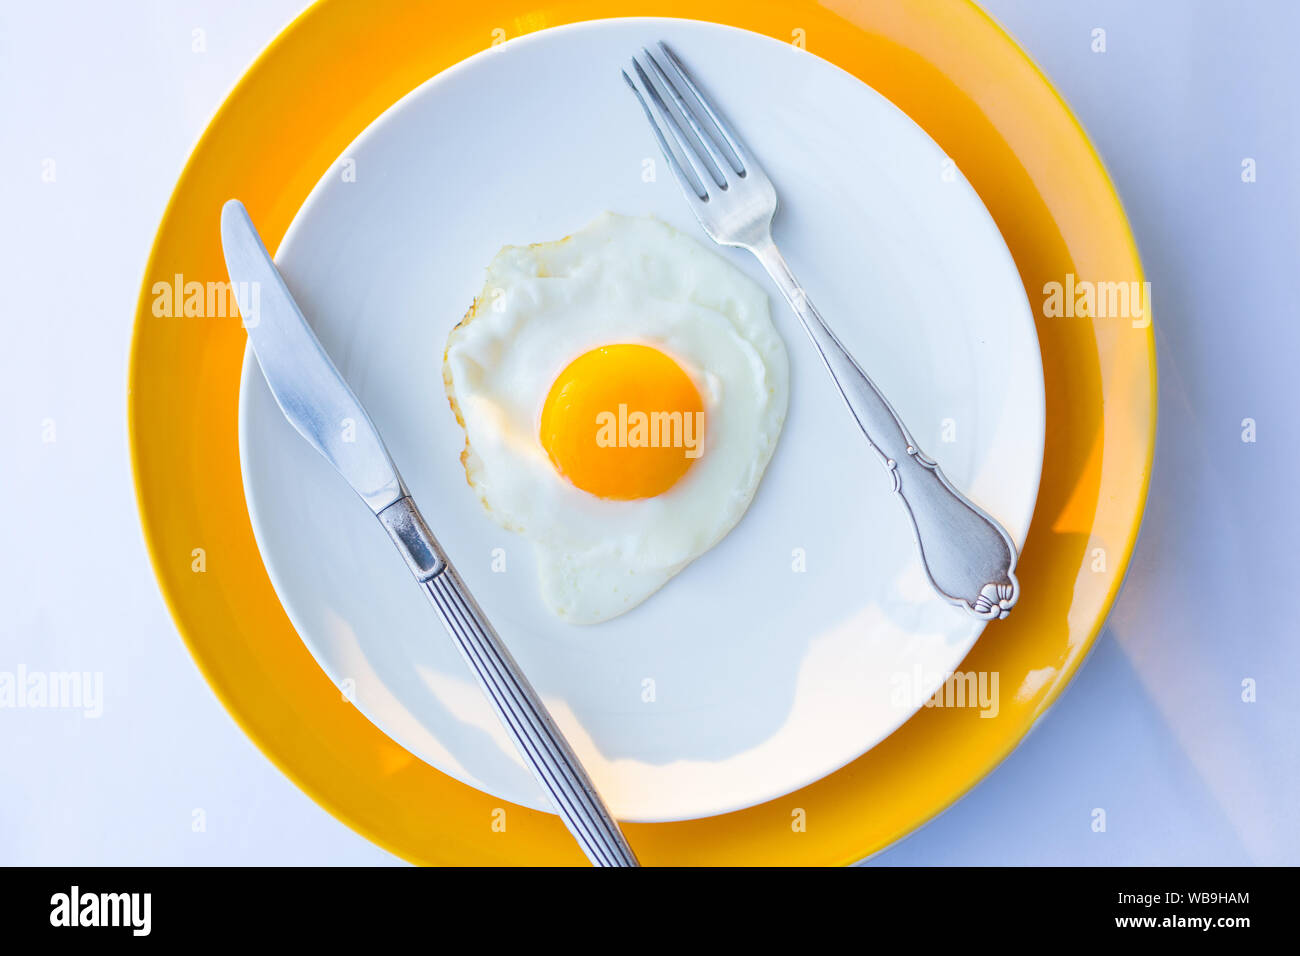 Spiegelei auf einer weißen, gelben Platte. Ansicht von oben. Restaurant. Frühstück Stockfoto